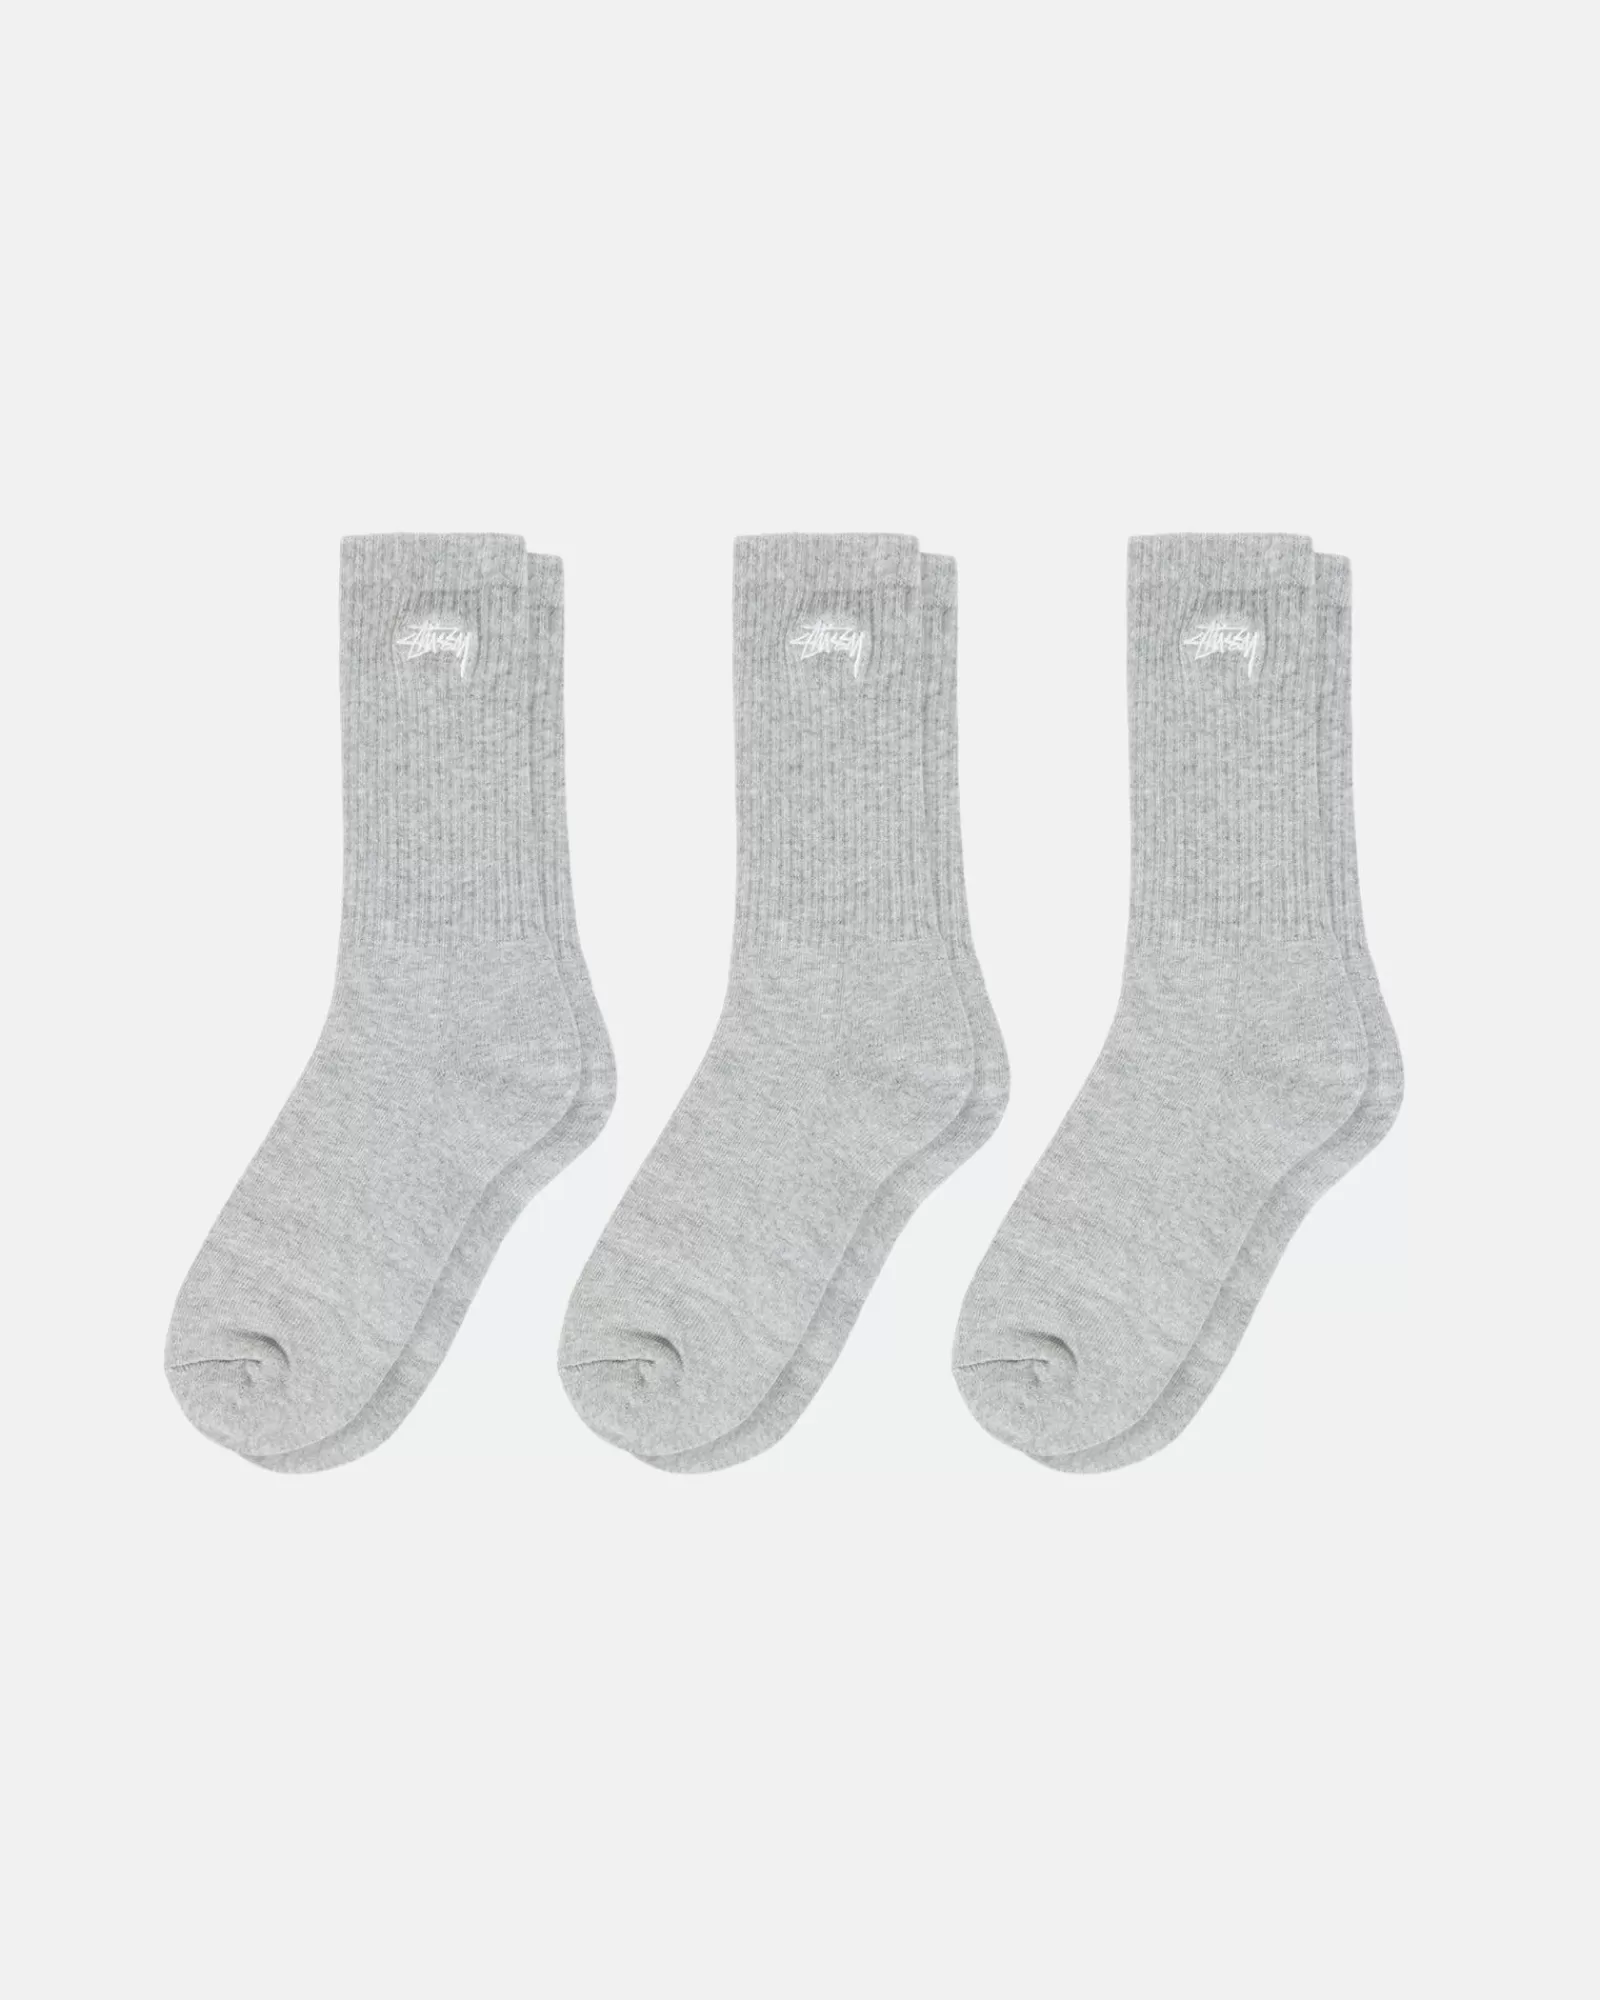 Stüssy Stock Crew Socks Multipack Online